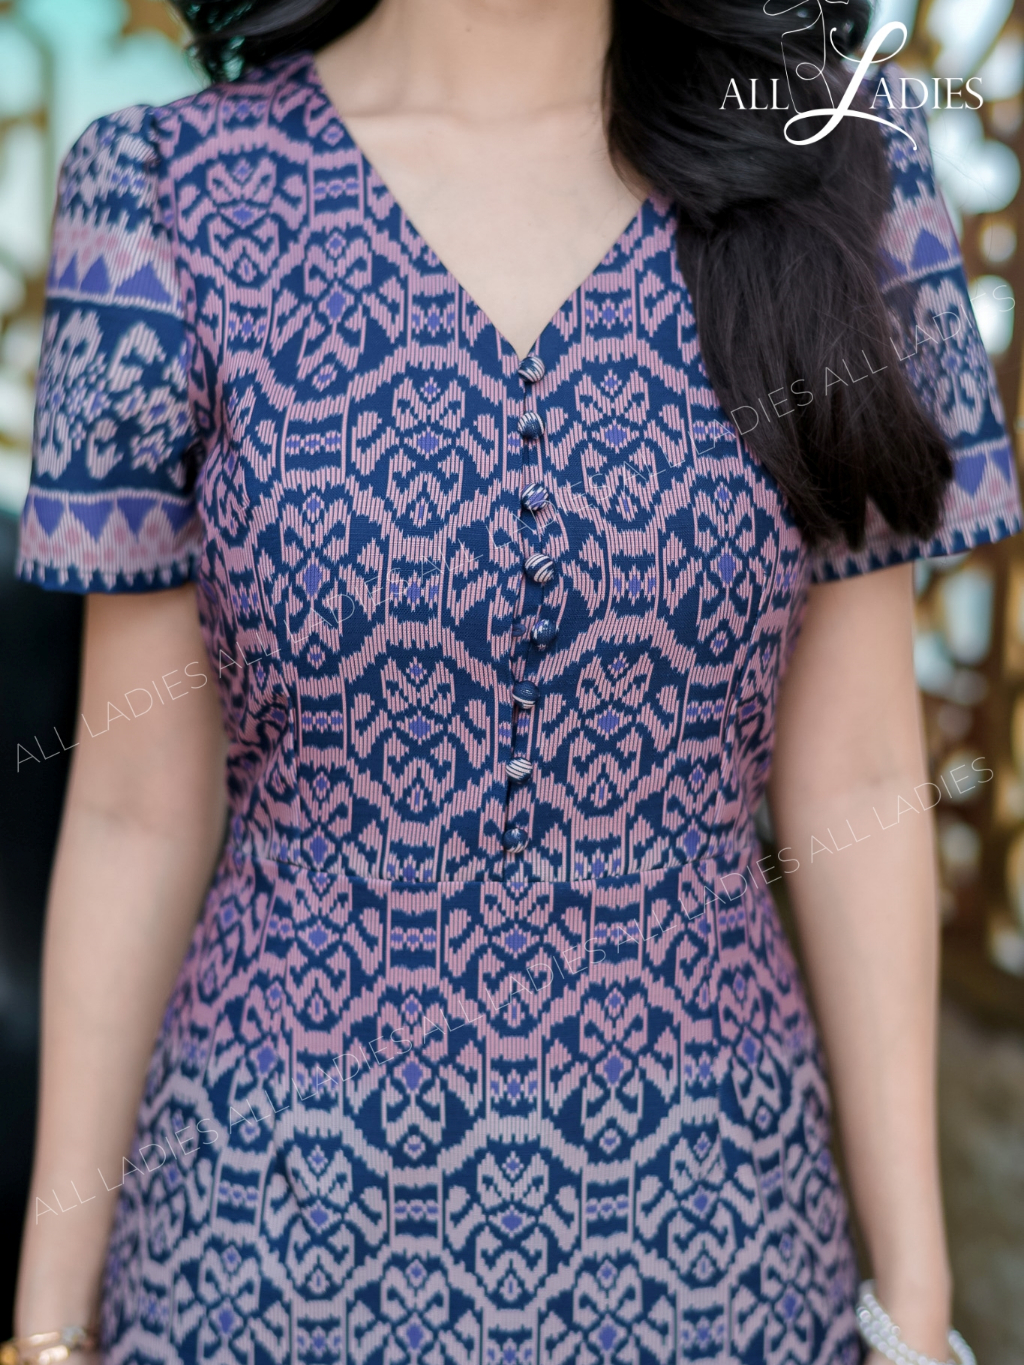 all-ladies-เดรสลายไทย-ผ้าพิมพ์ลายไล่สีออมเบรสวยมาก-ๆ-ทรงสวยใส่ง่ายแพทเทิร์นเข้าทรงสวย-ห้ามพลาดค่ะ